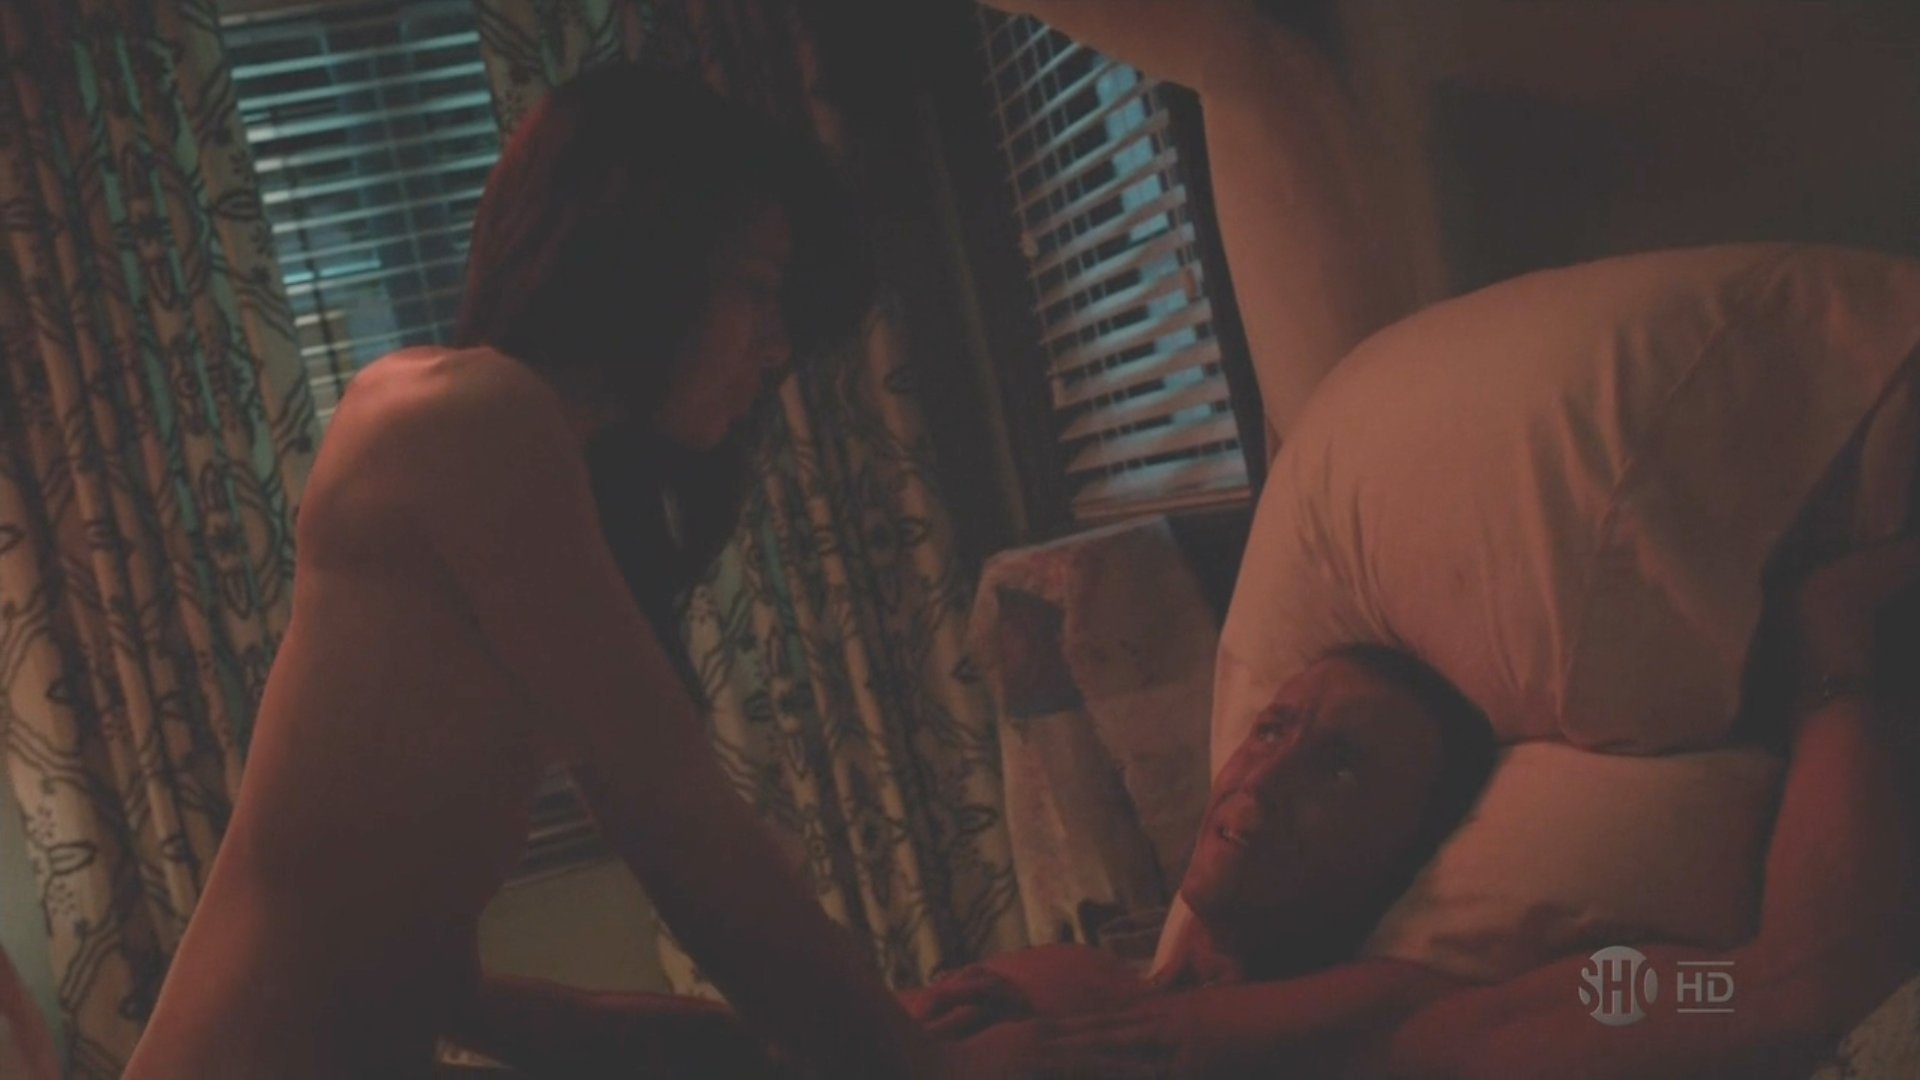 Naked Aimee Garcia In Dexter